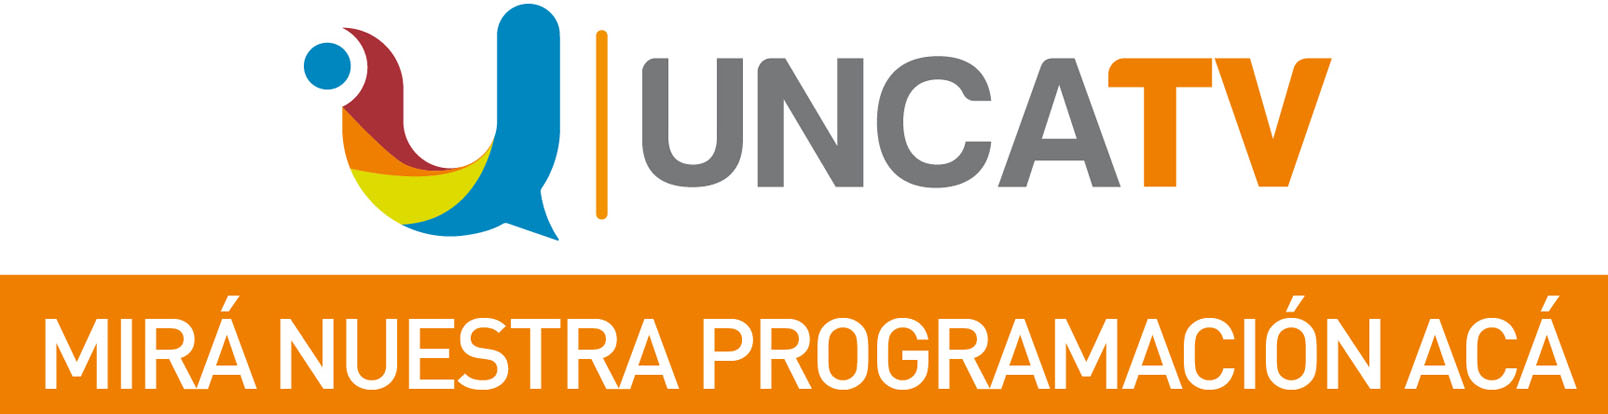 UNCA TV